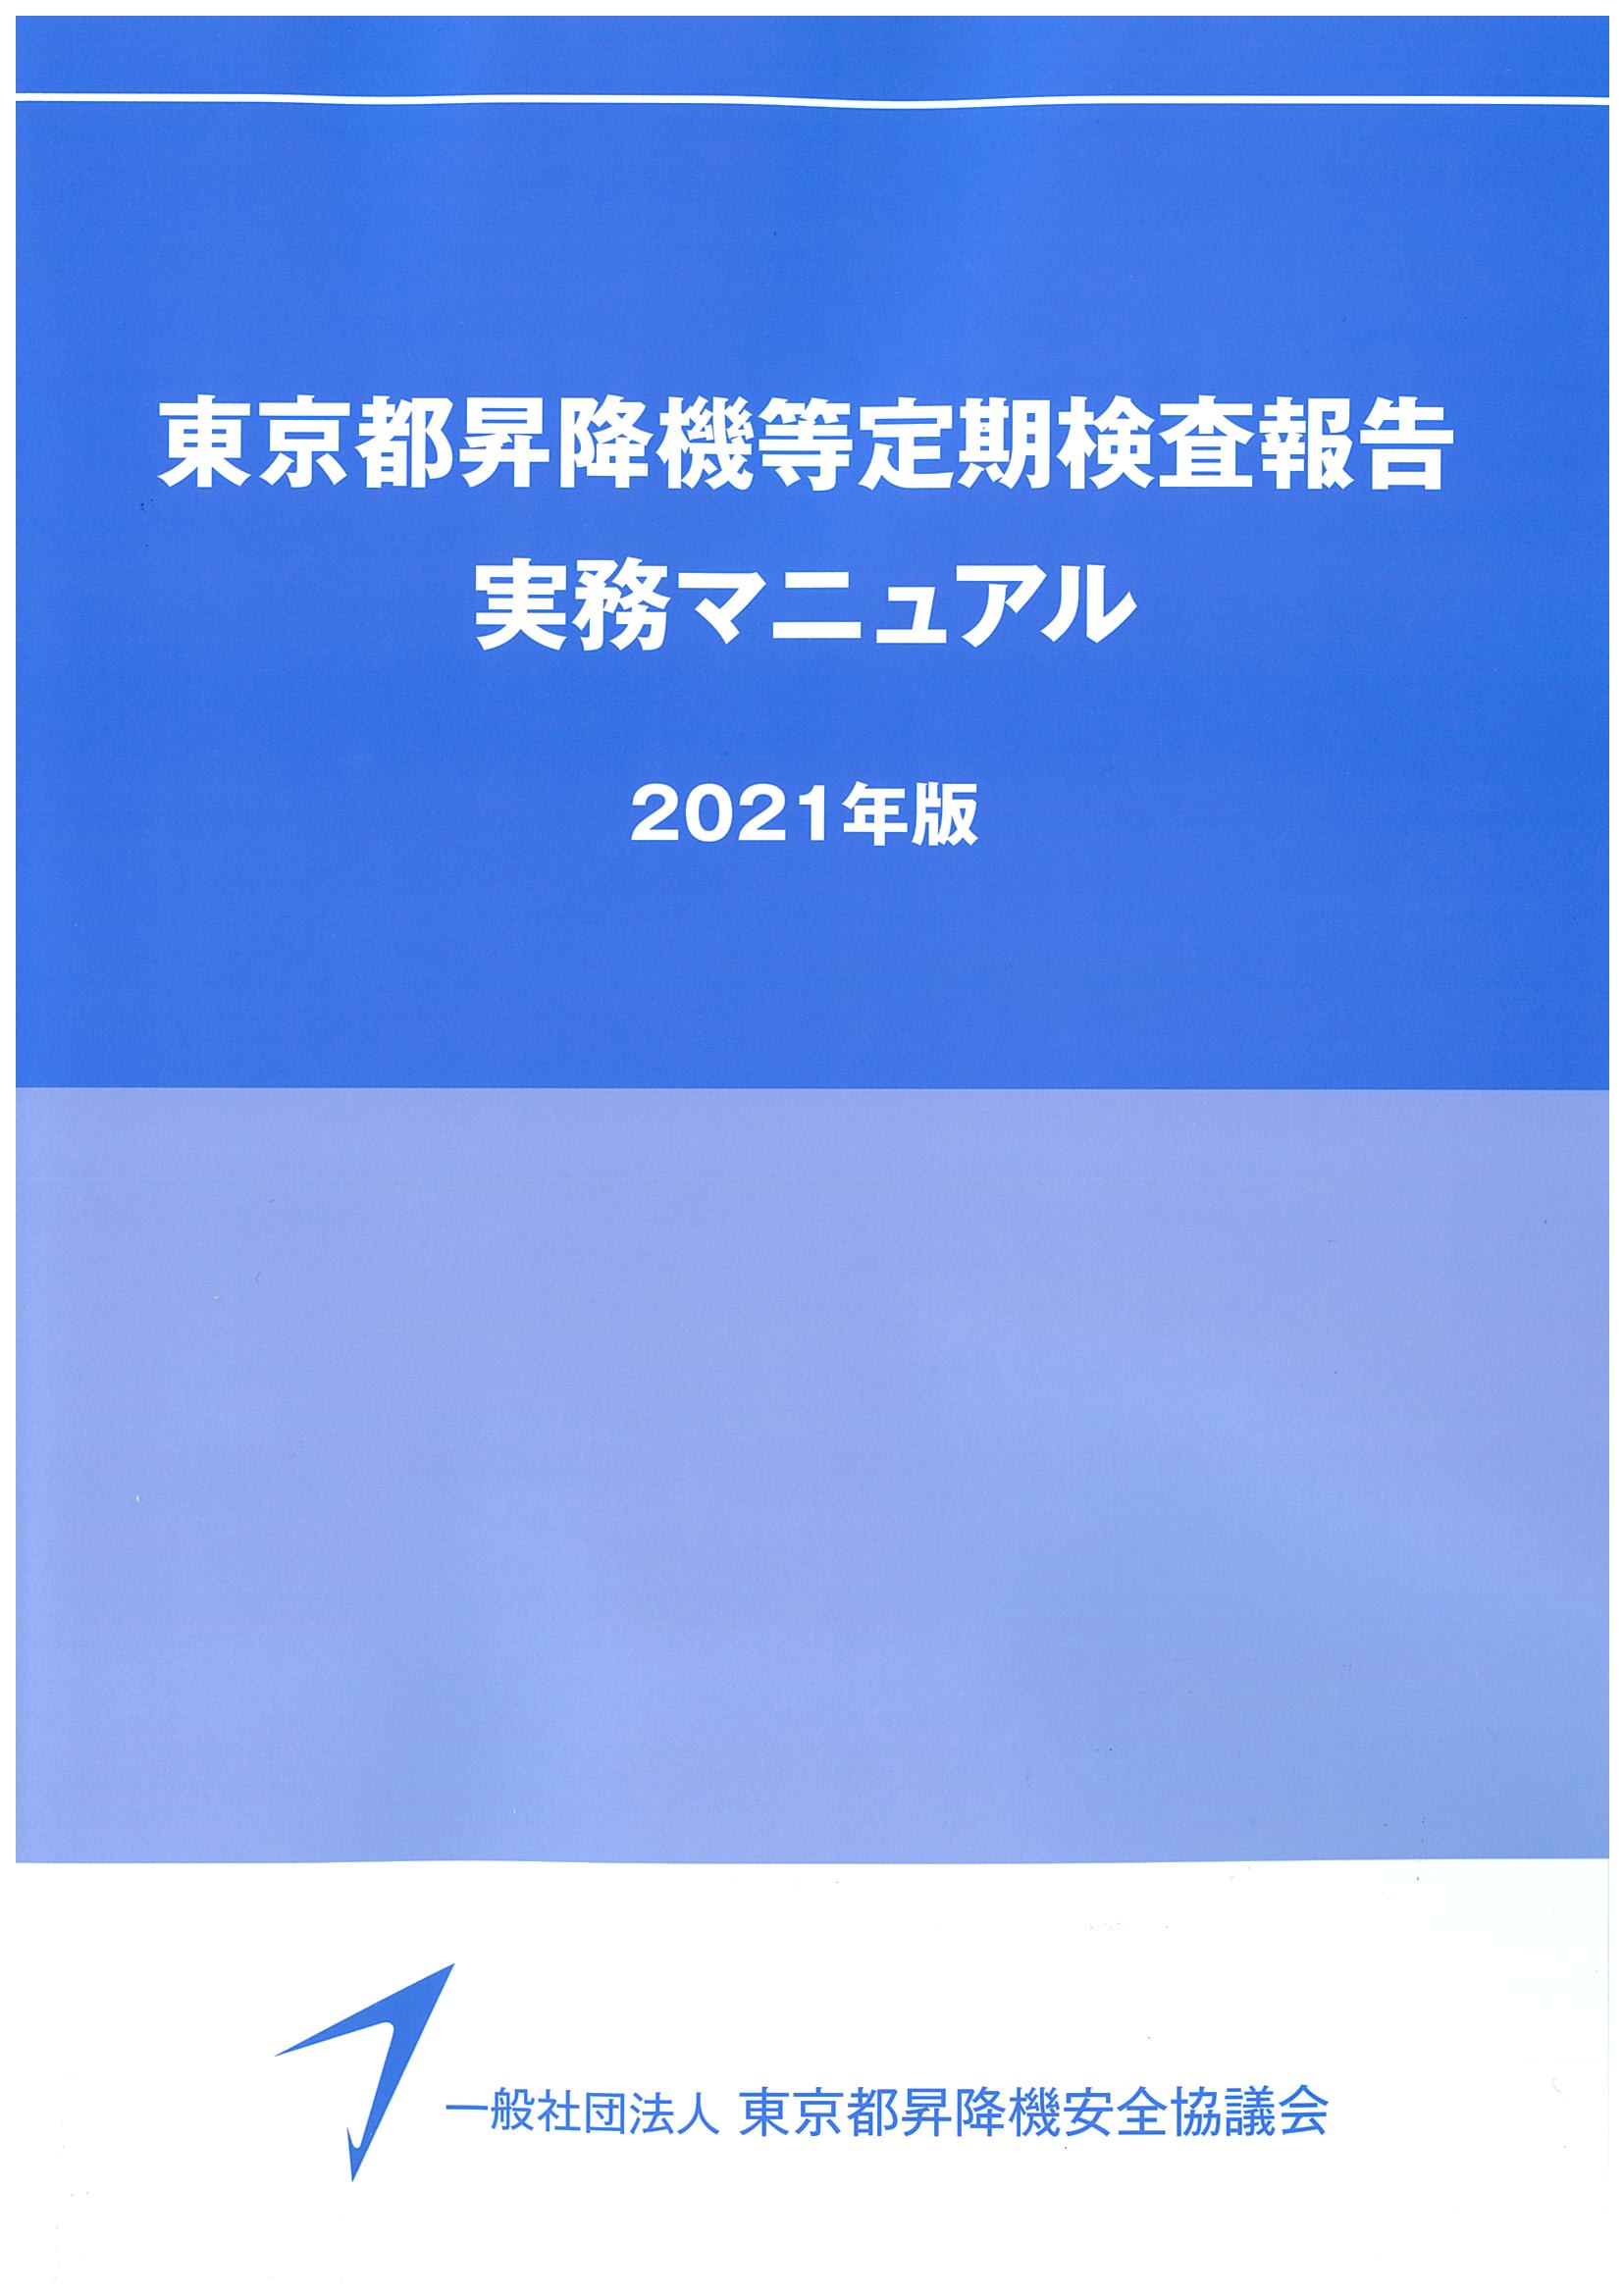 昇降機定期検査報告書 作成要領（2021年版）